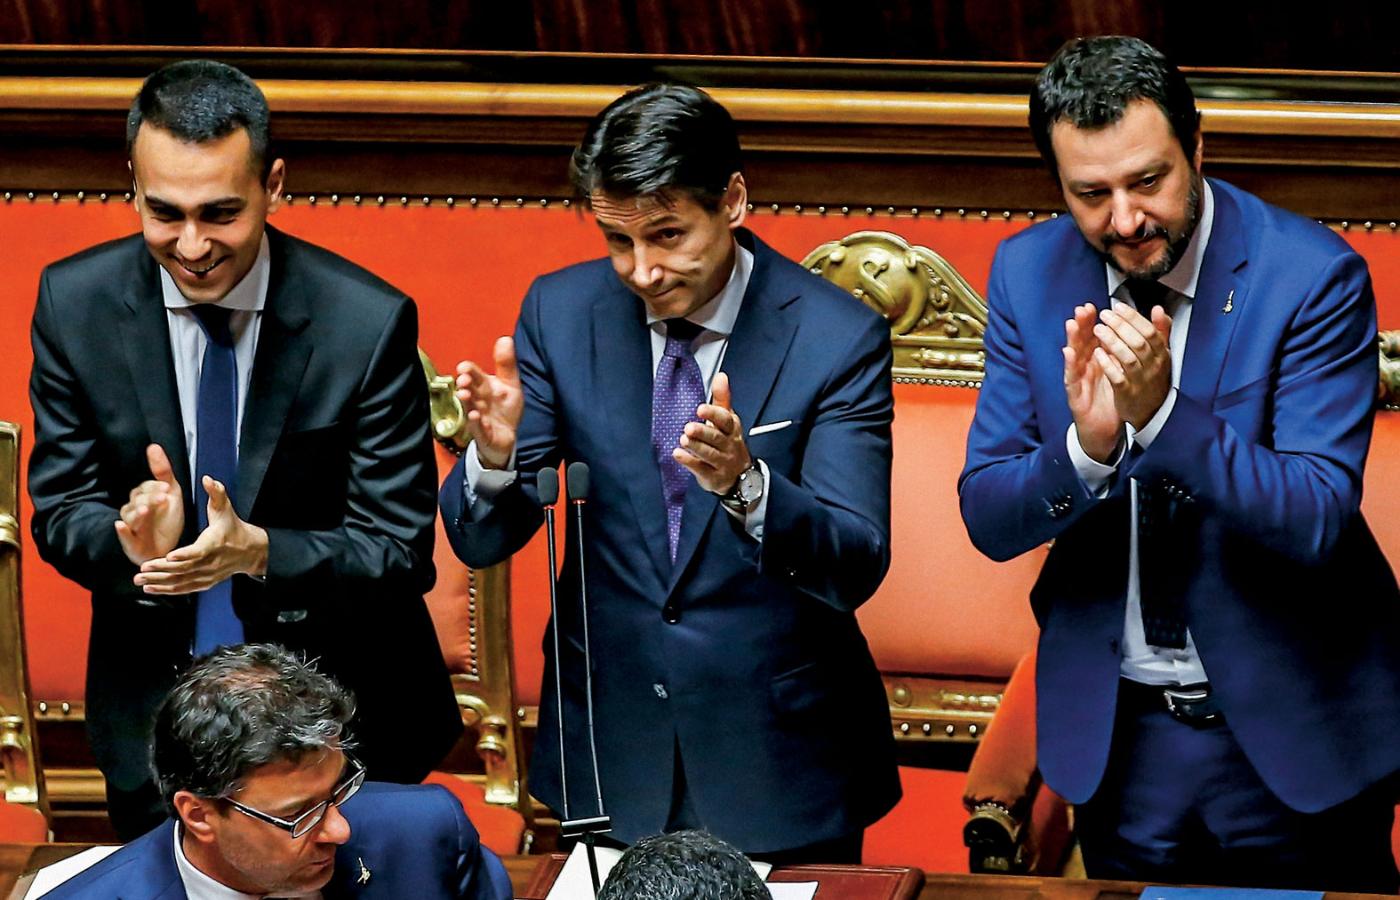 Od lewej: wicepremier Luigi Di Maio, premier Giuseppe Conte, wicepremier Matteo Salvini. To ten ostatni jest już dziś nową twarzą Włoch.